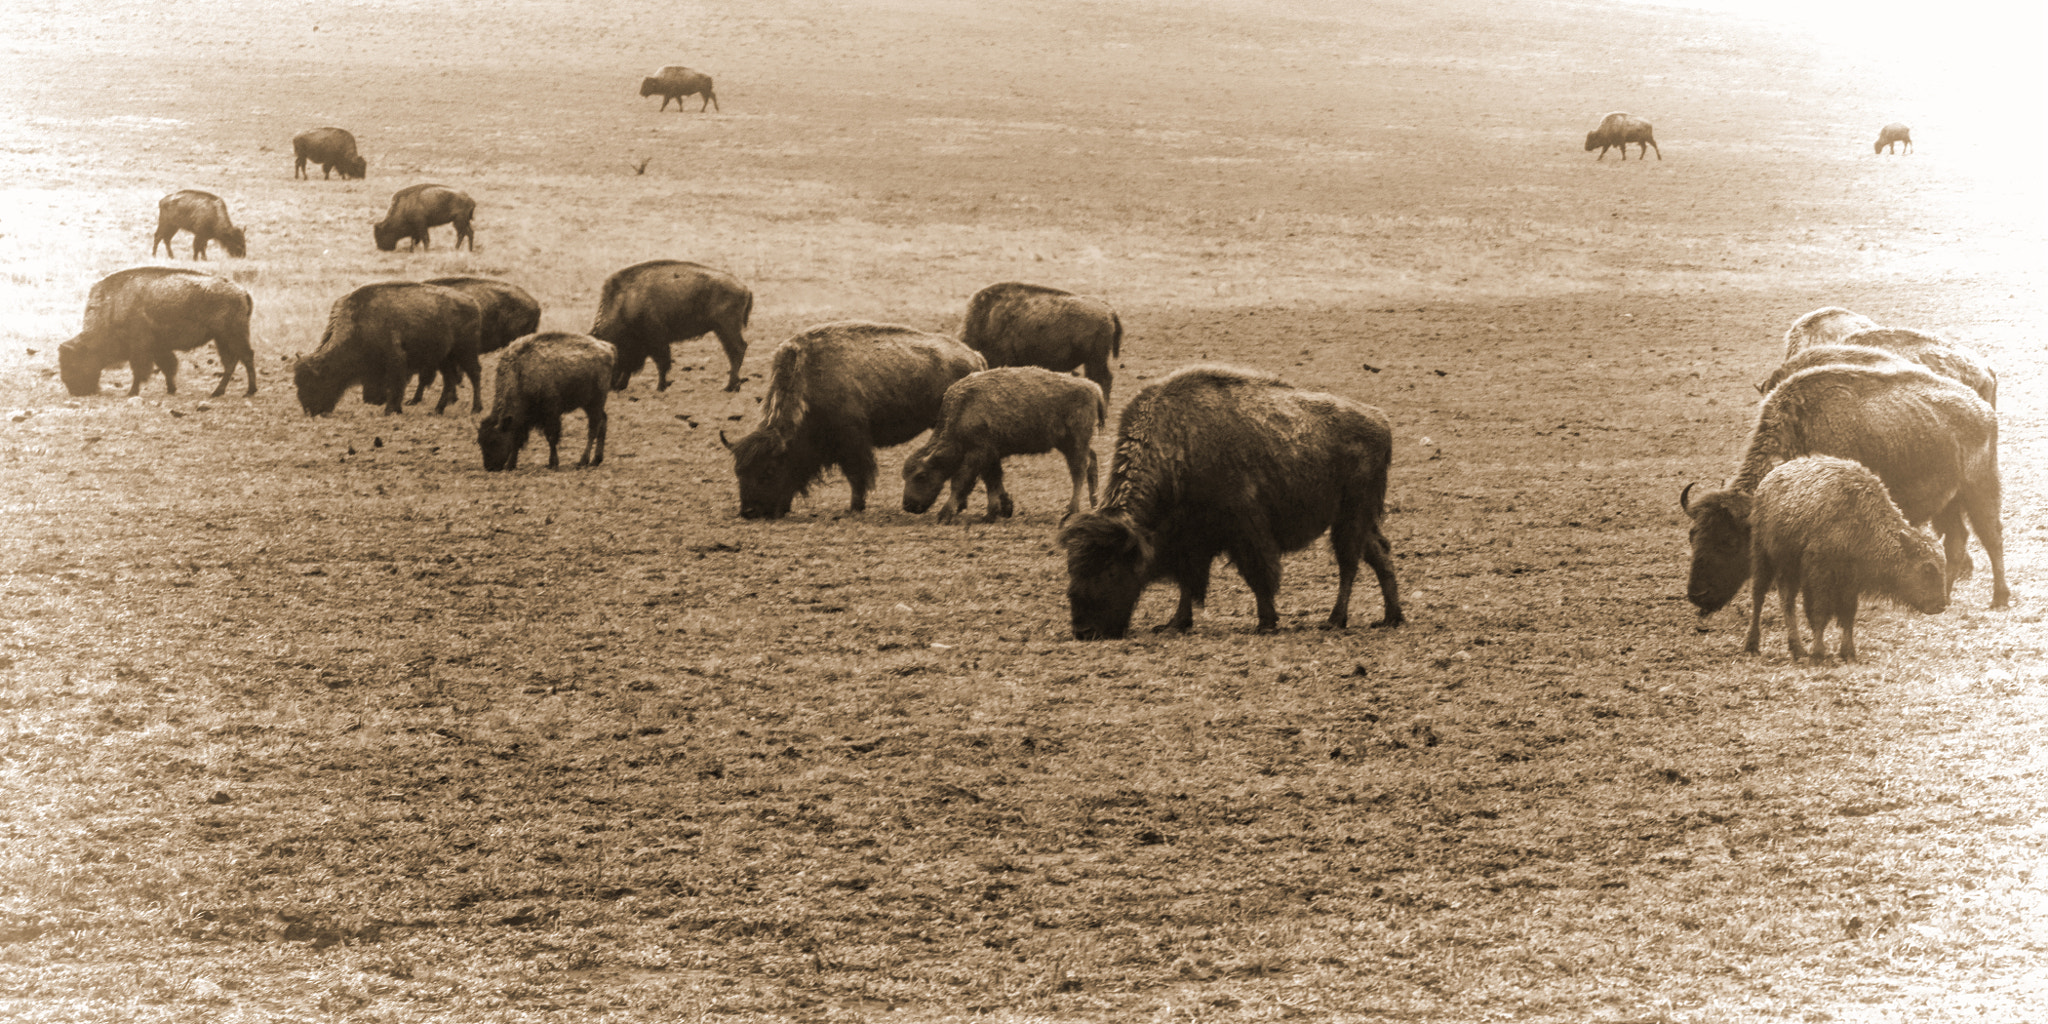 AF Zoom-Nikkor 28-70mm f/3.5-4.5 sample photo. Bison herd light vig photography